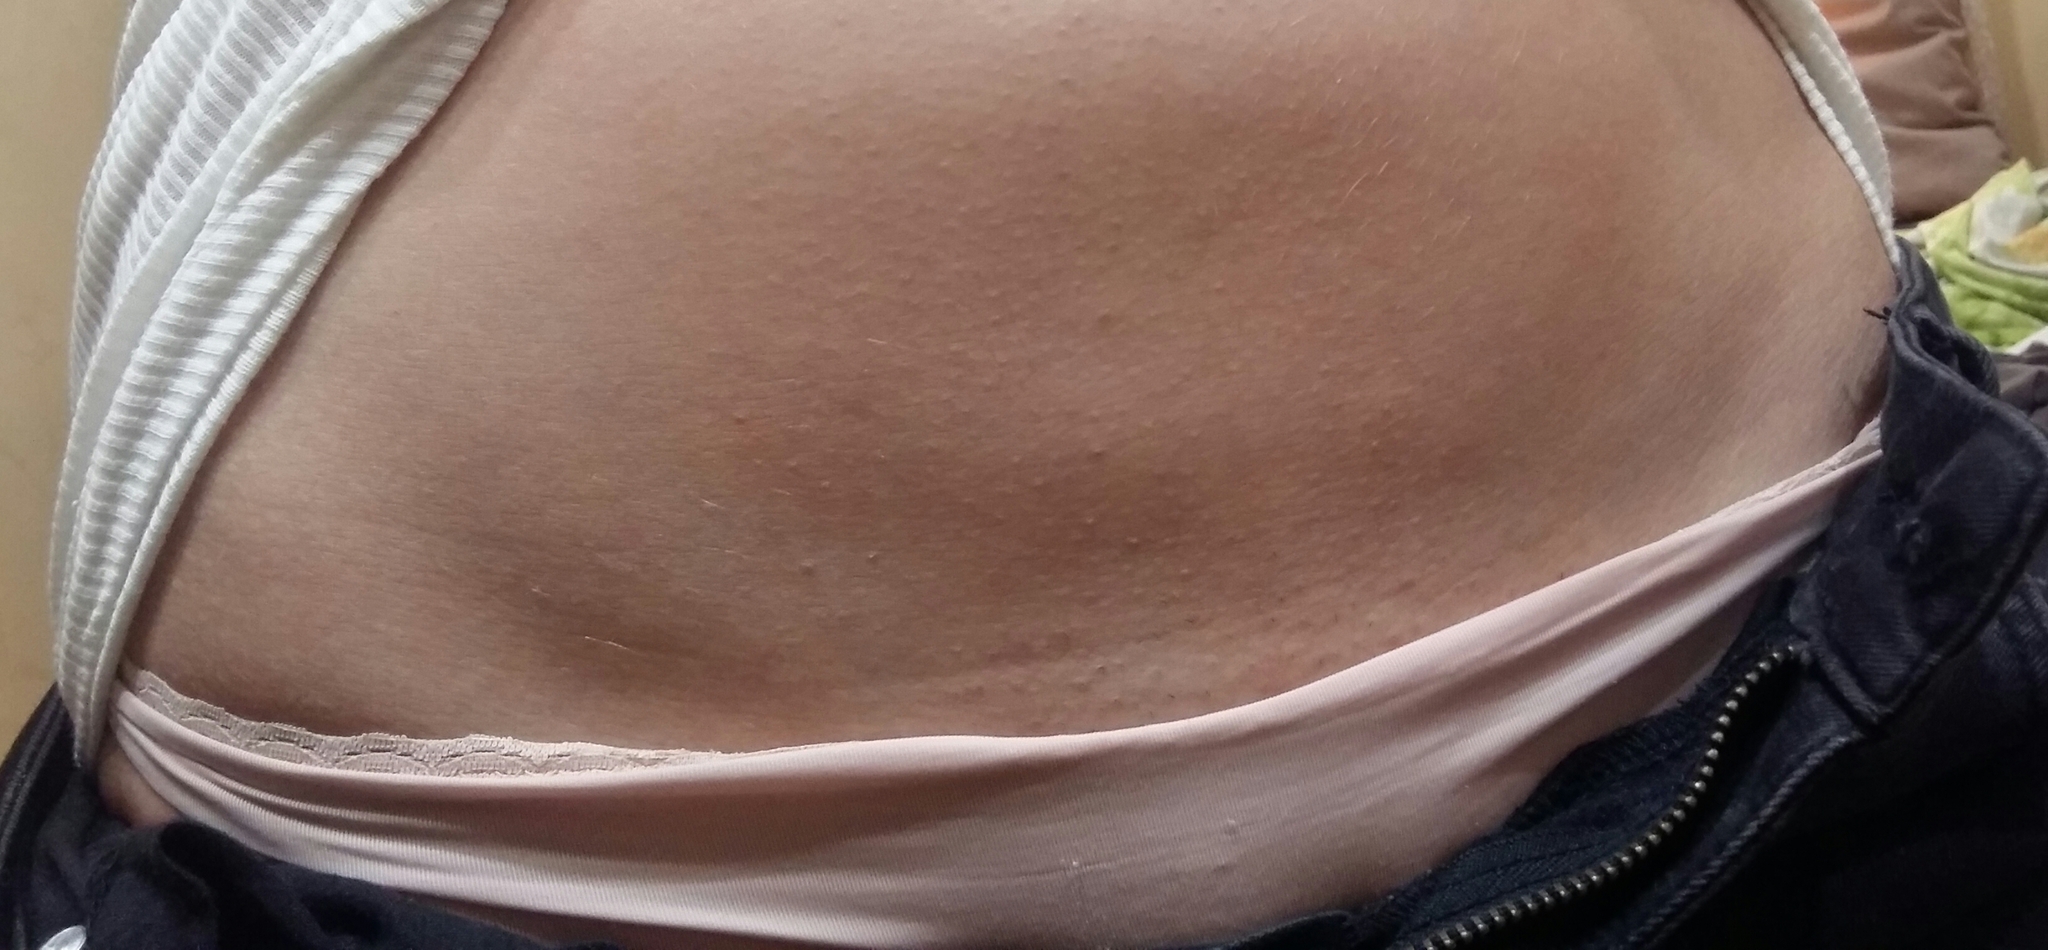 аллергия на груди у беременной фото 50